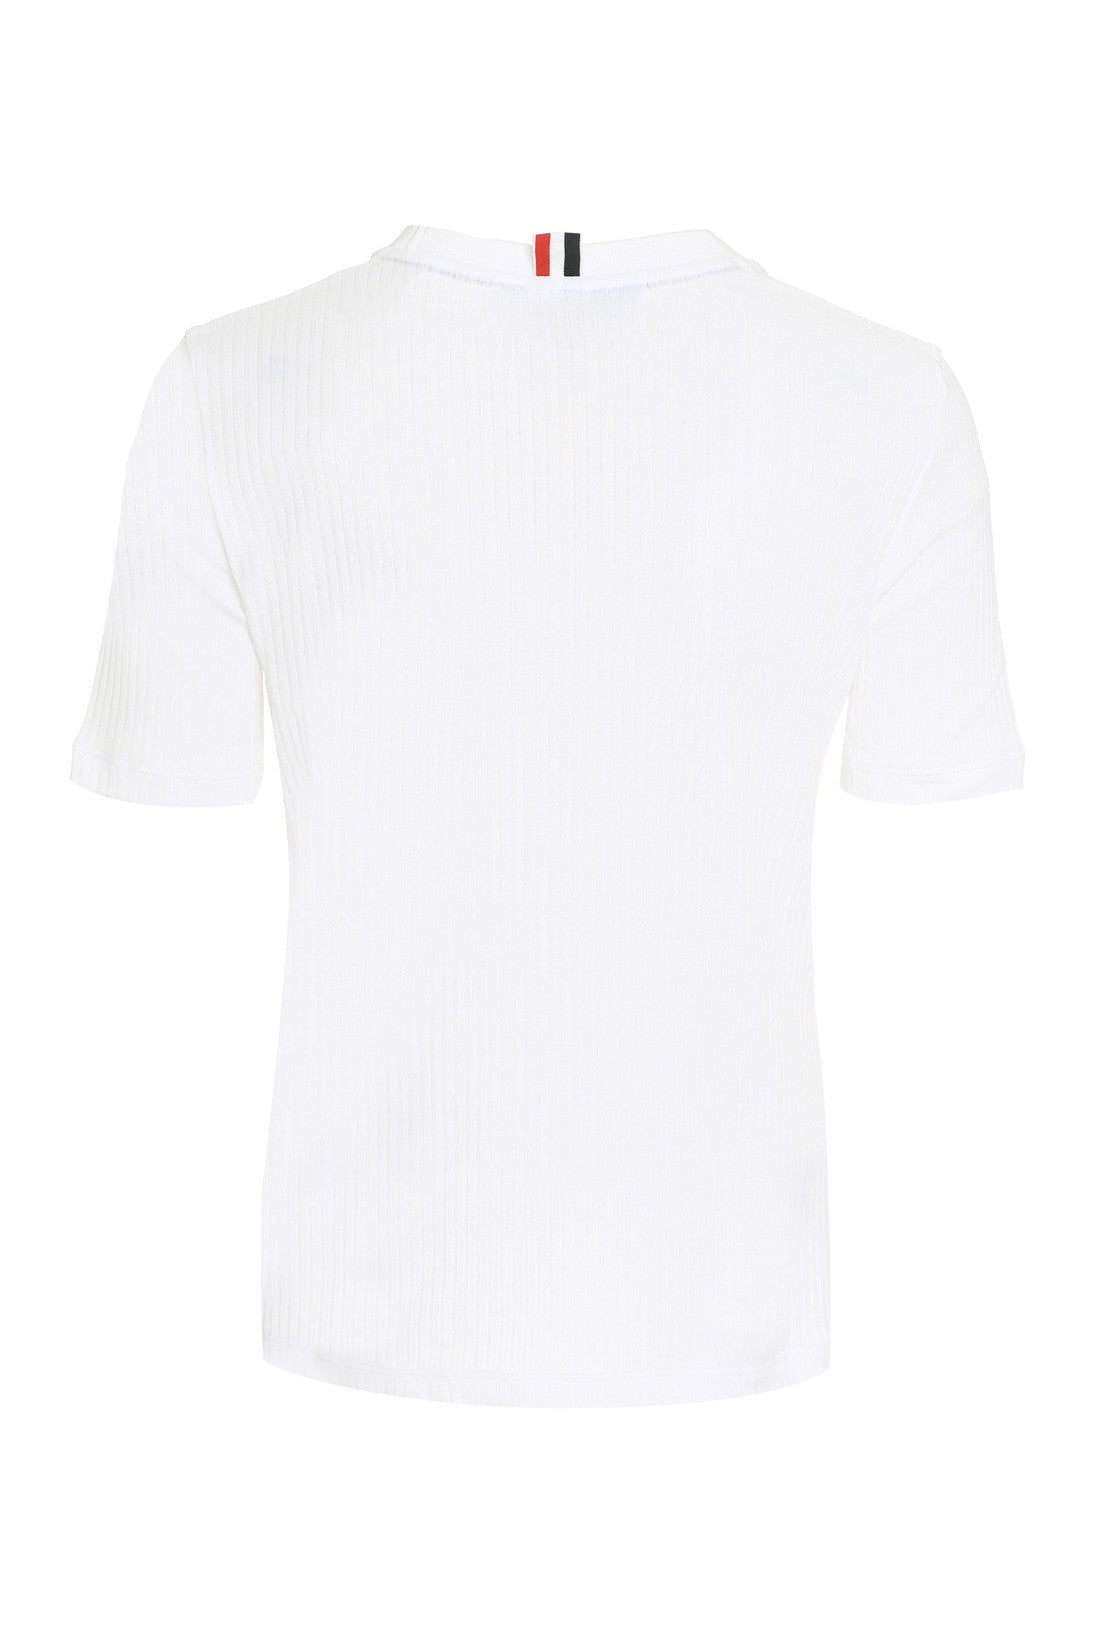 Thom Browne-OUTLET-SALE-Cotton knit T-shirt-ARCHIVIST